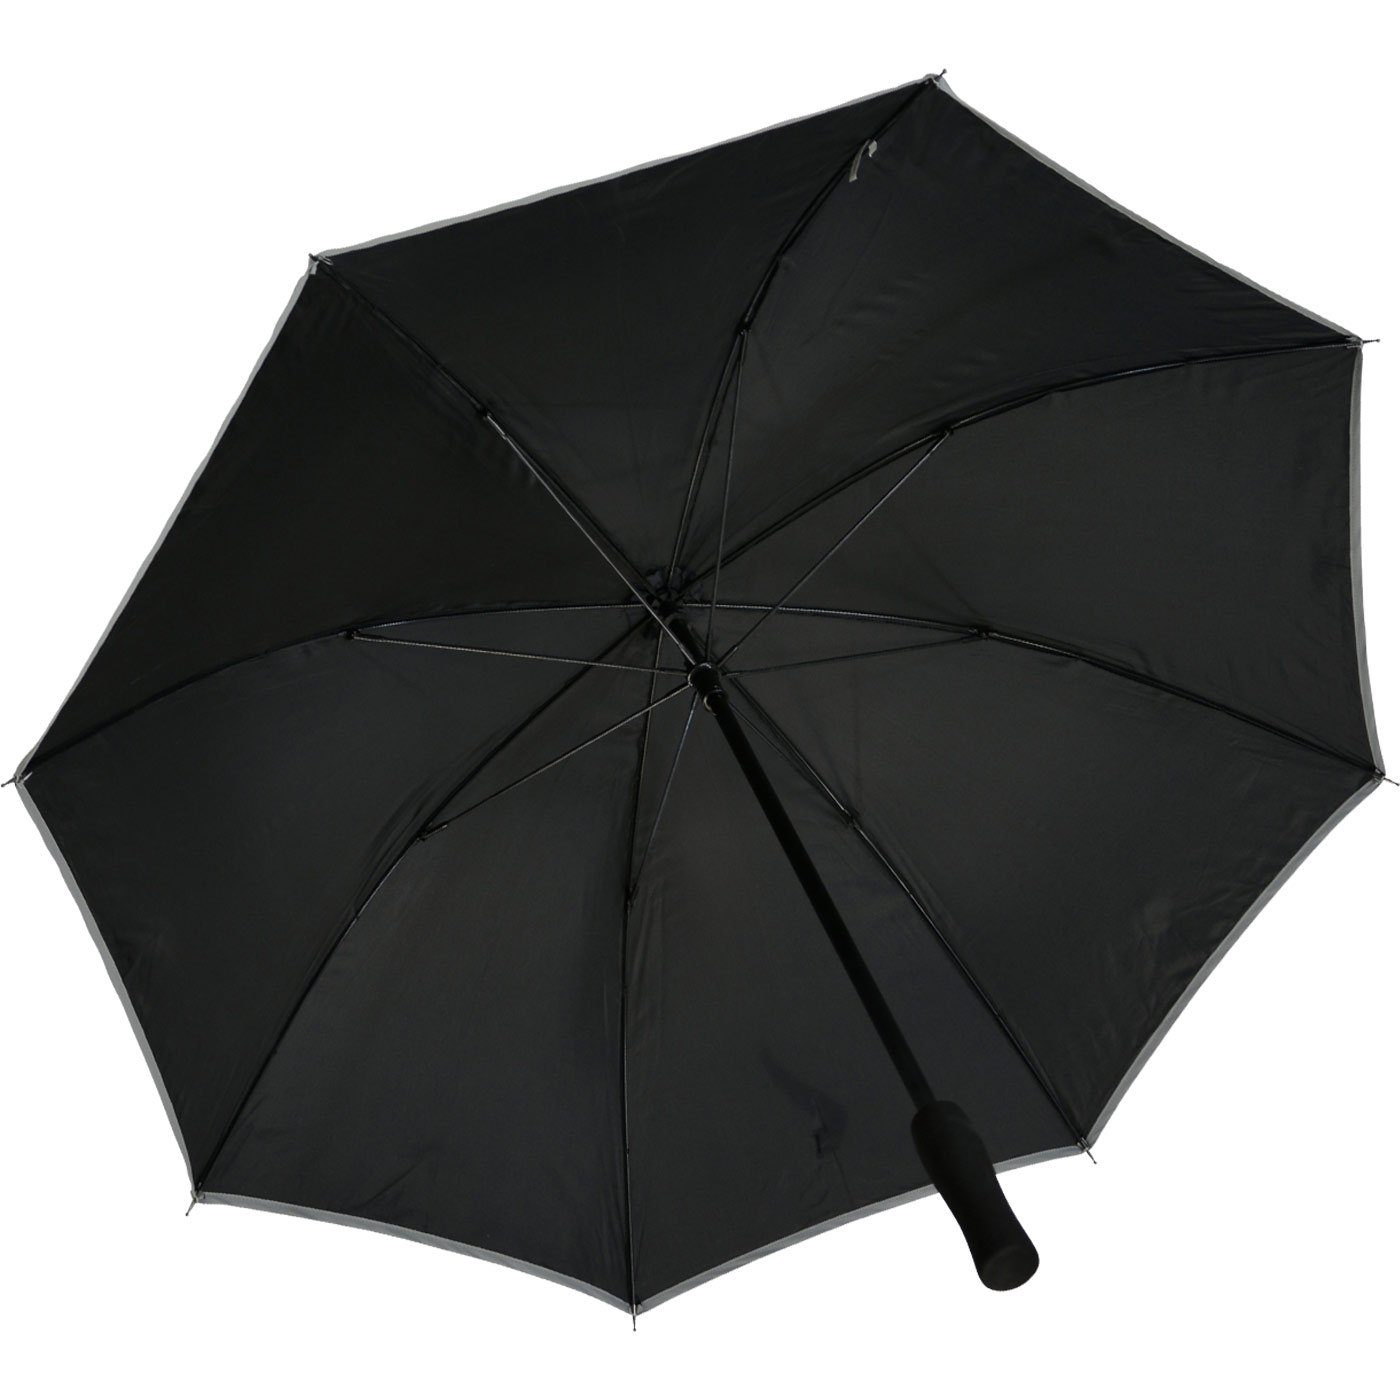 Stockregenschirm Falcone® leichter reflektierende reflex schwarz Impliva Fiberglas Borte, Reflex Sicherheitsschirm